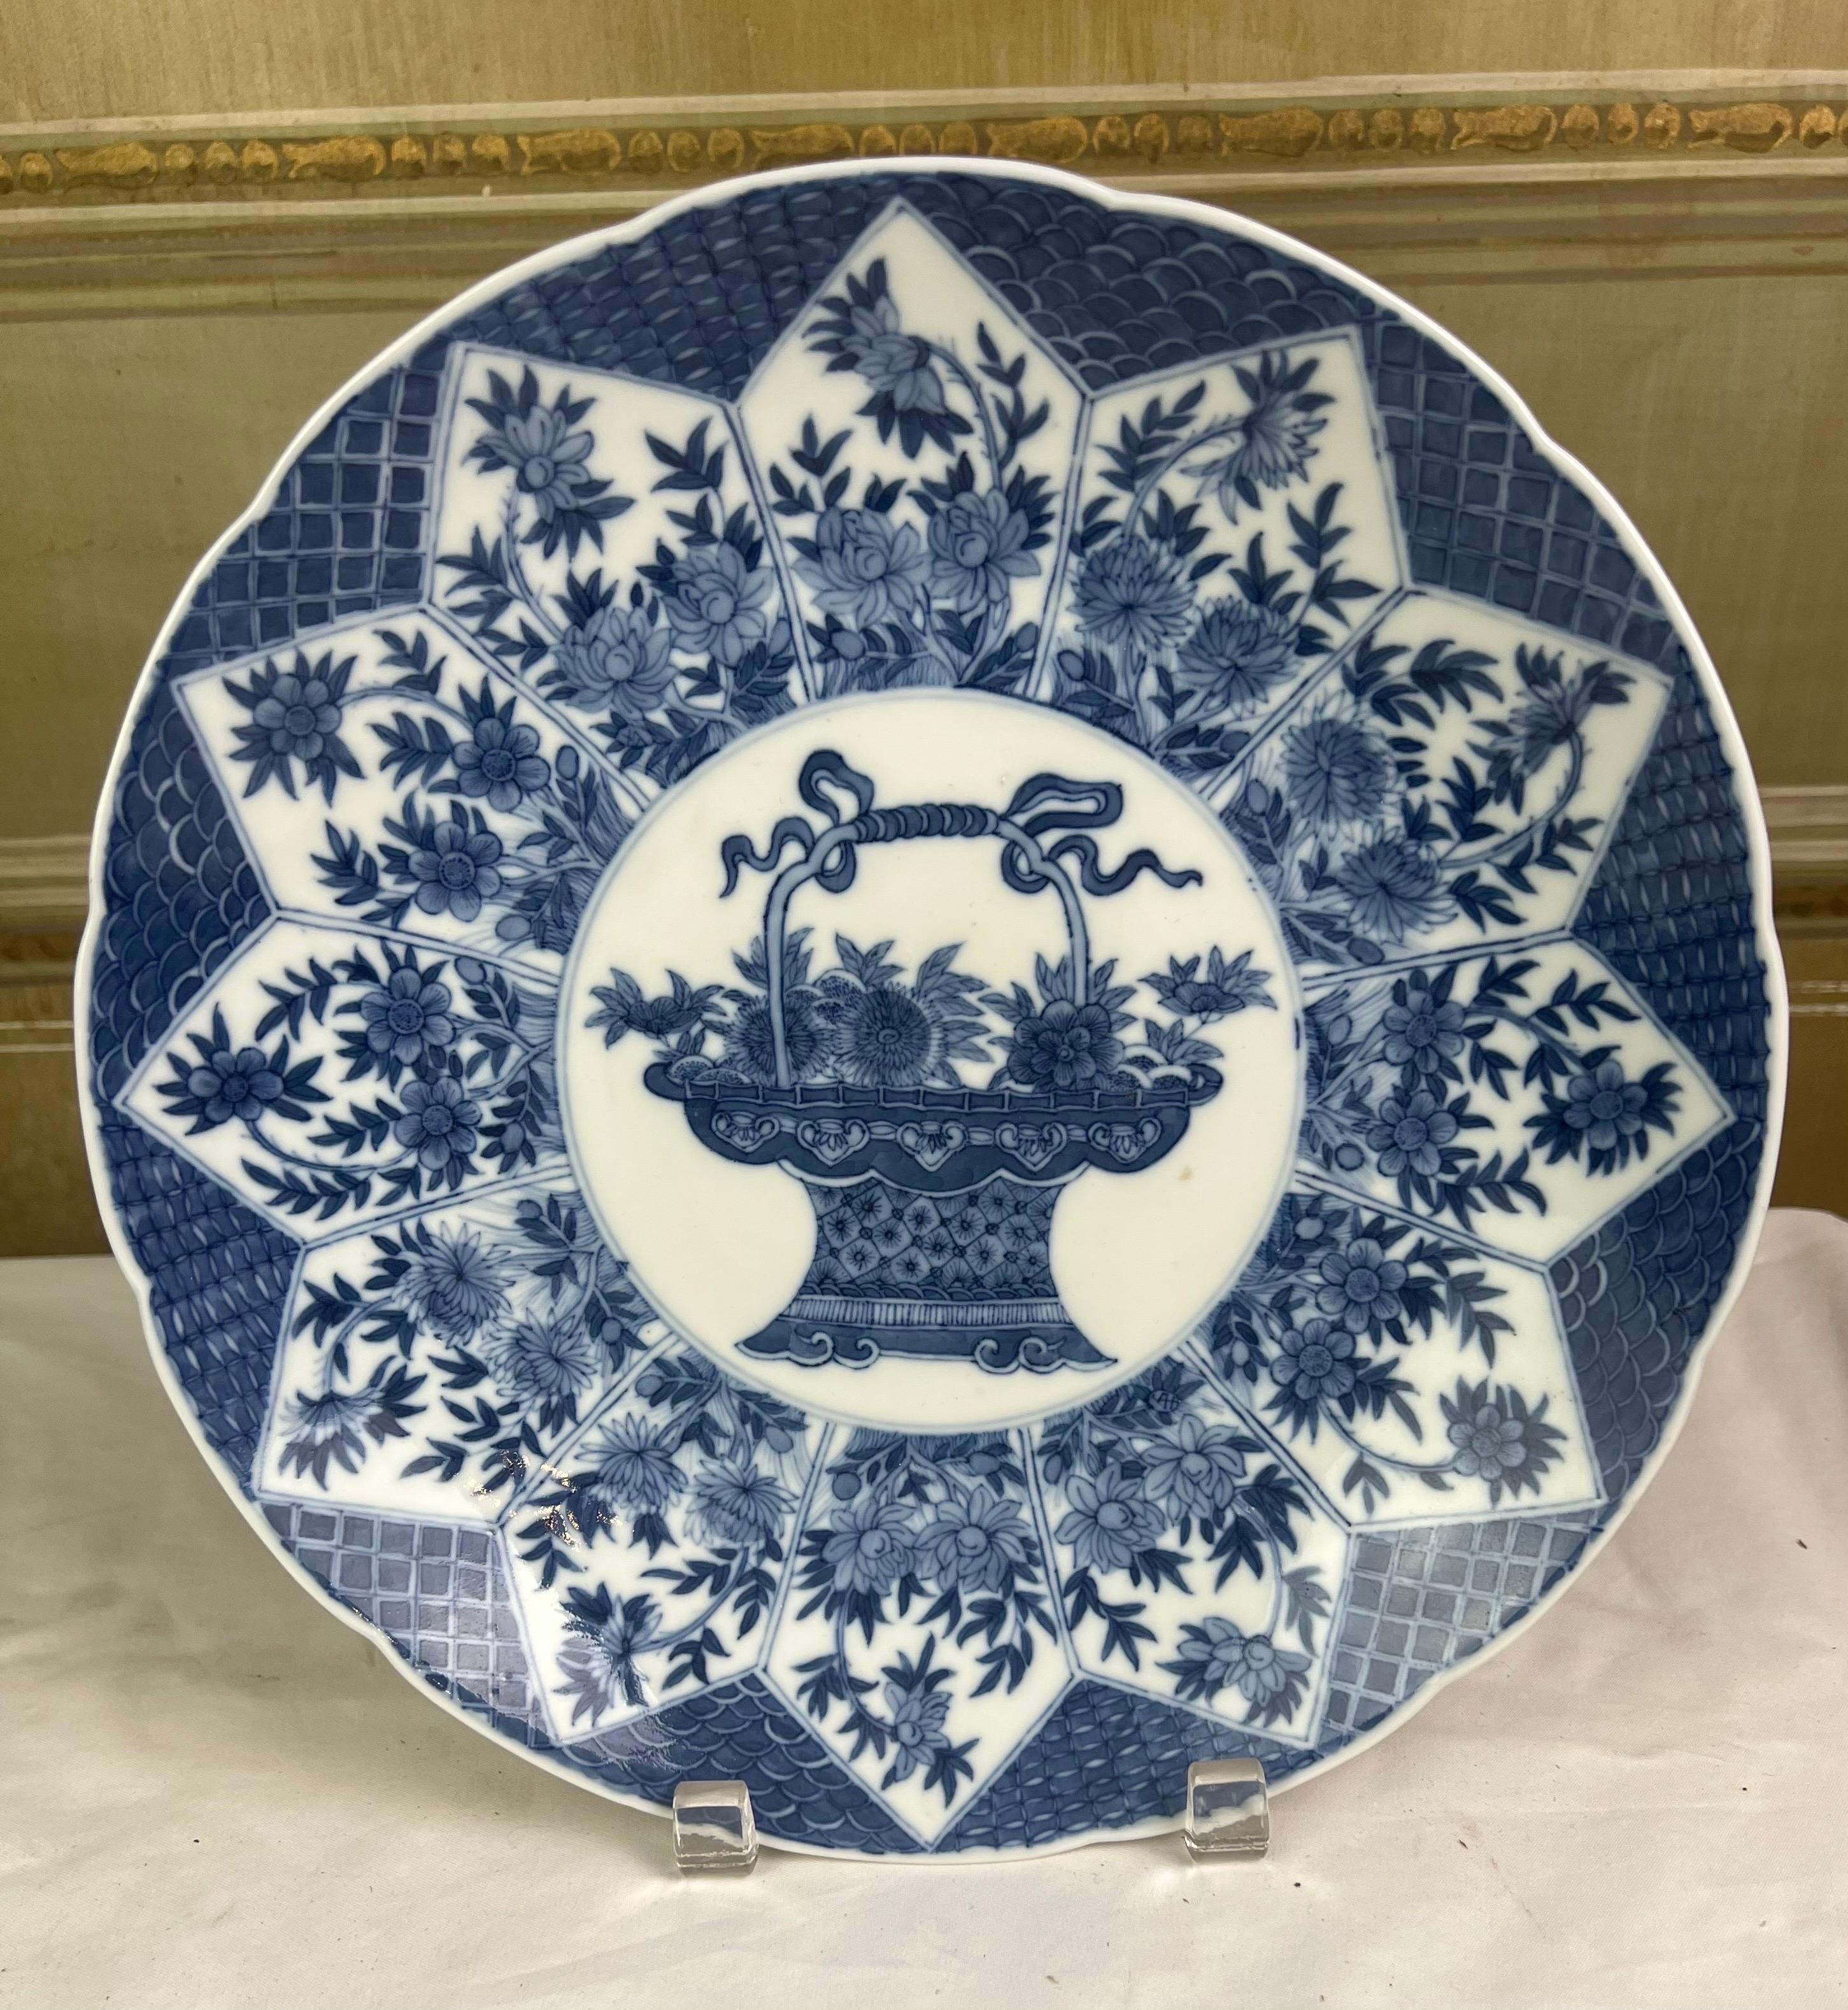 Unterglasurplatte im Stil der Qing-Dynastie mit einem Blumenkorb
Wunderschönes handbemaltes chinesisches Porzellan mit verschiedenen Schattierungen von Kobaltblau
Ausgezeichneter Zustand.  


